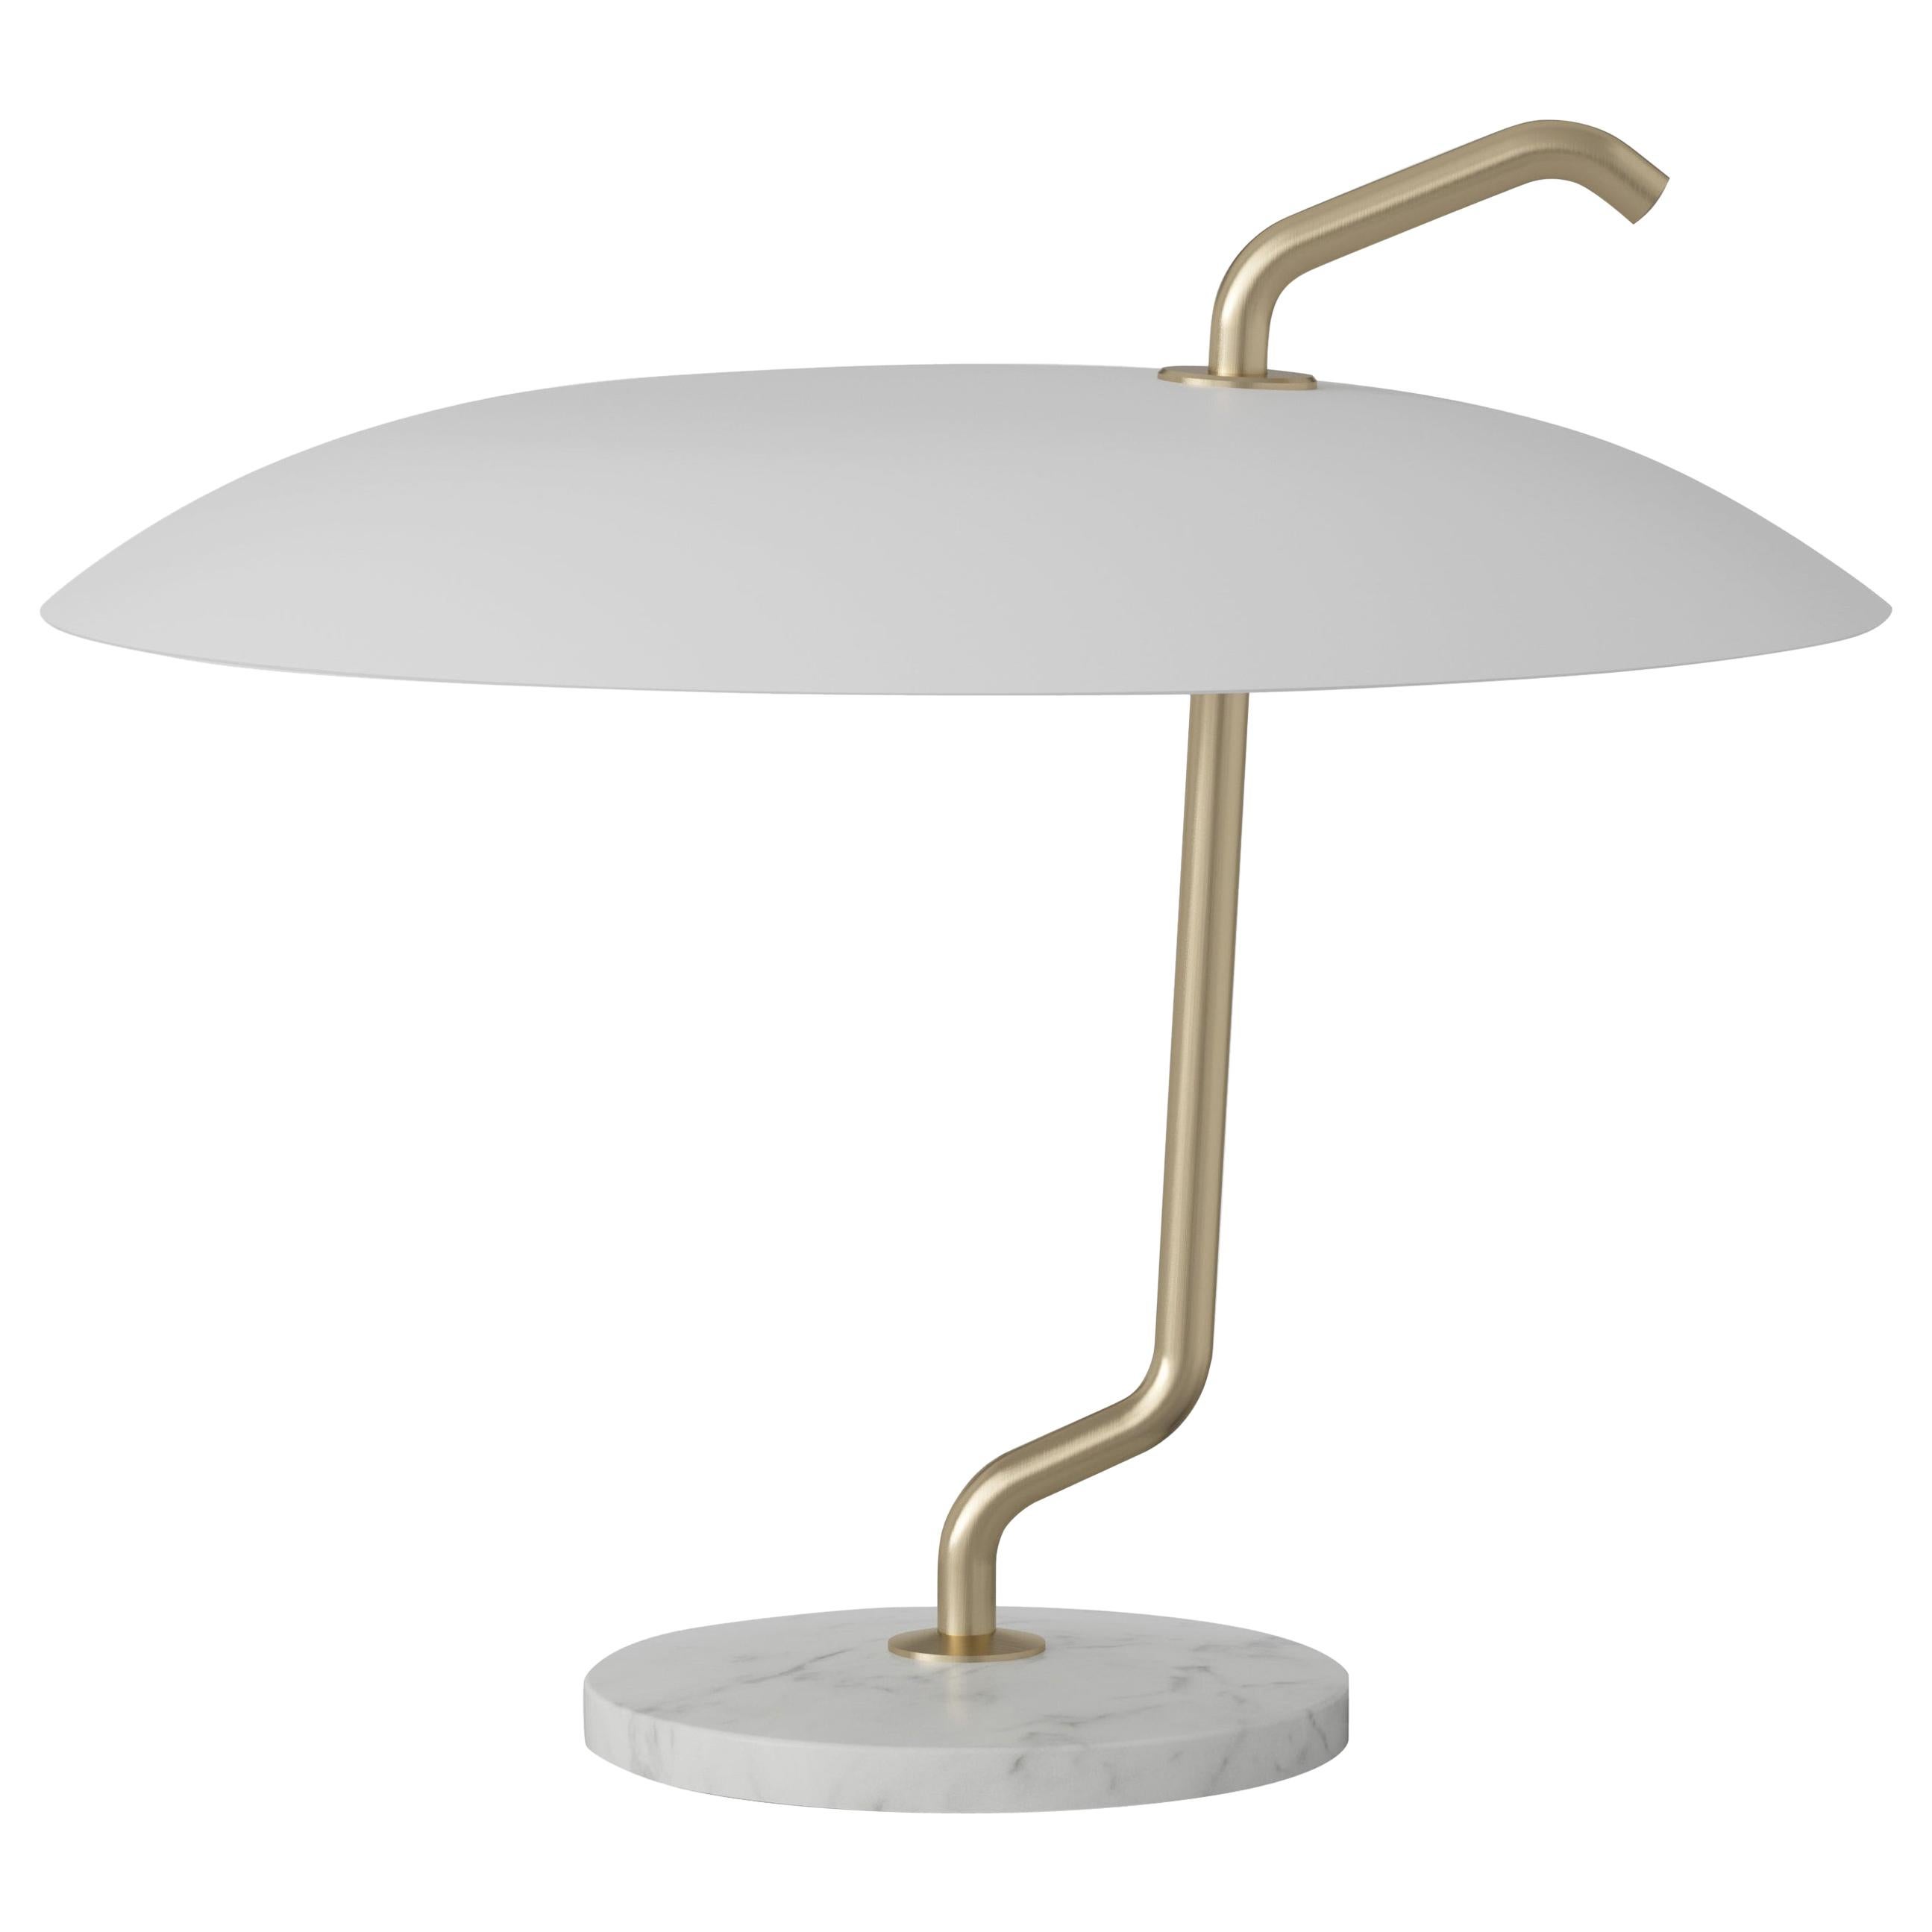 Gino Sarfatti-Lampe Modell 537, Messingstruktur, weißer Reflektor für Astep